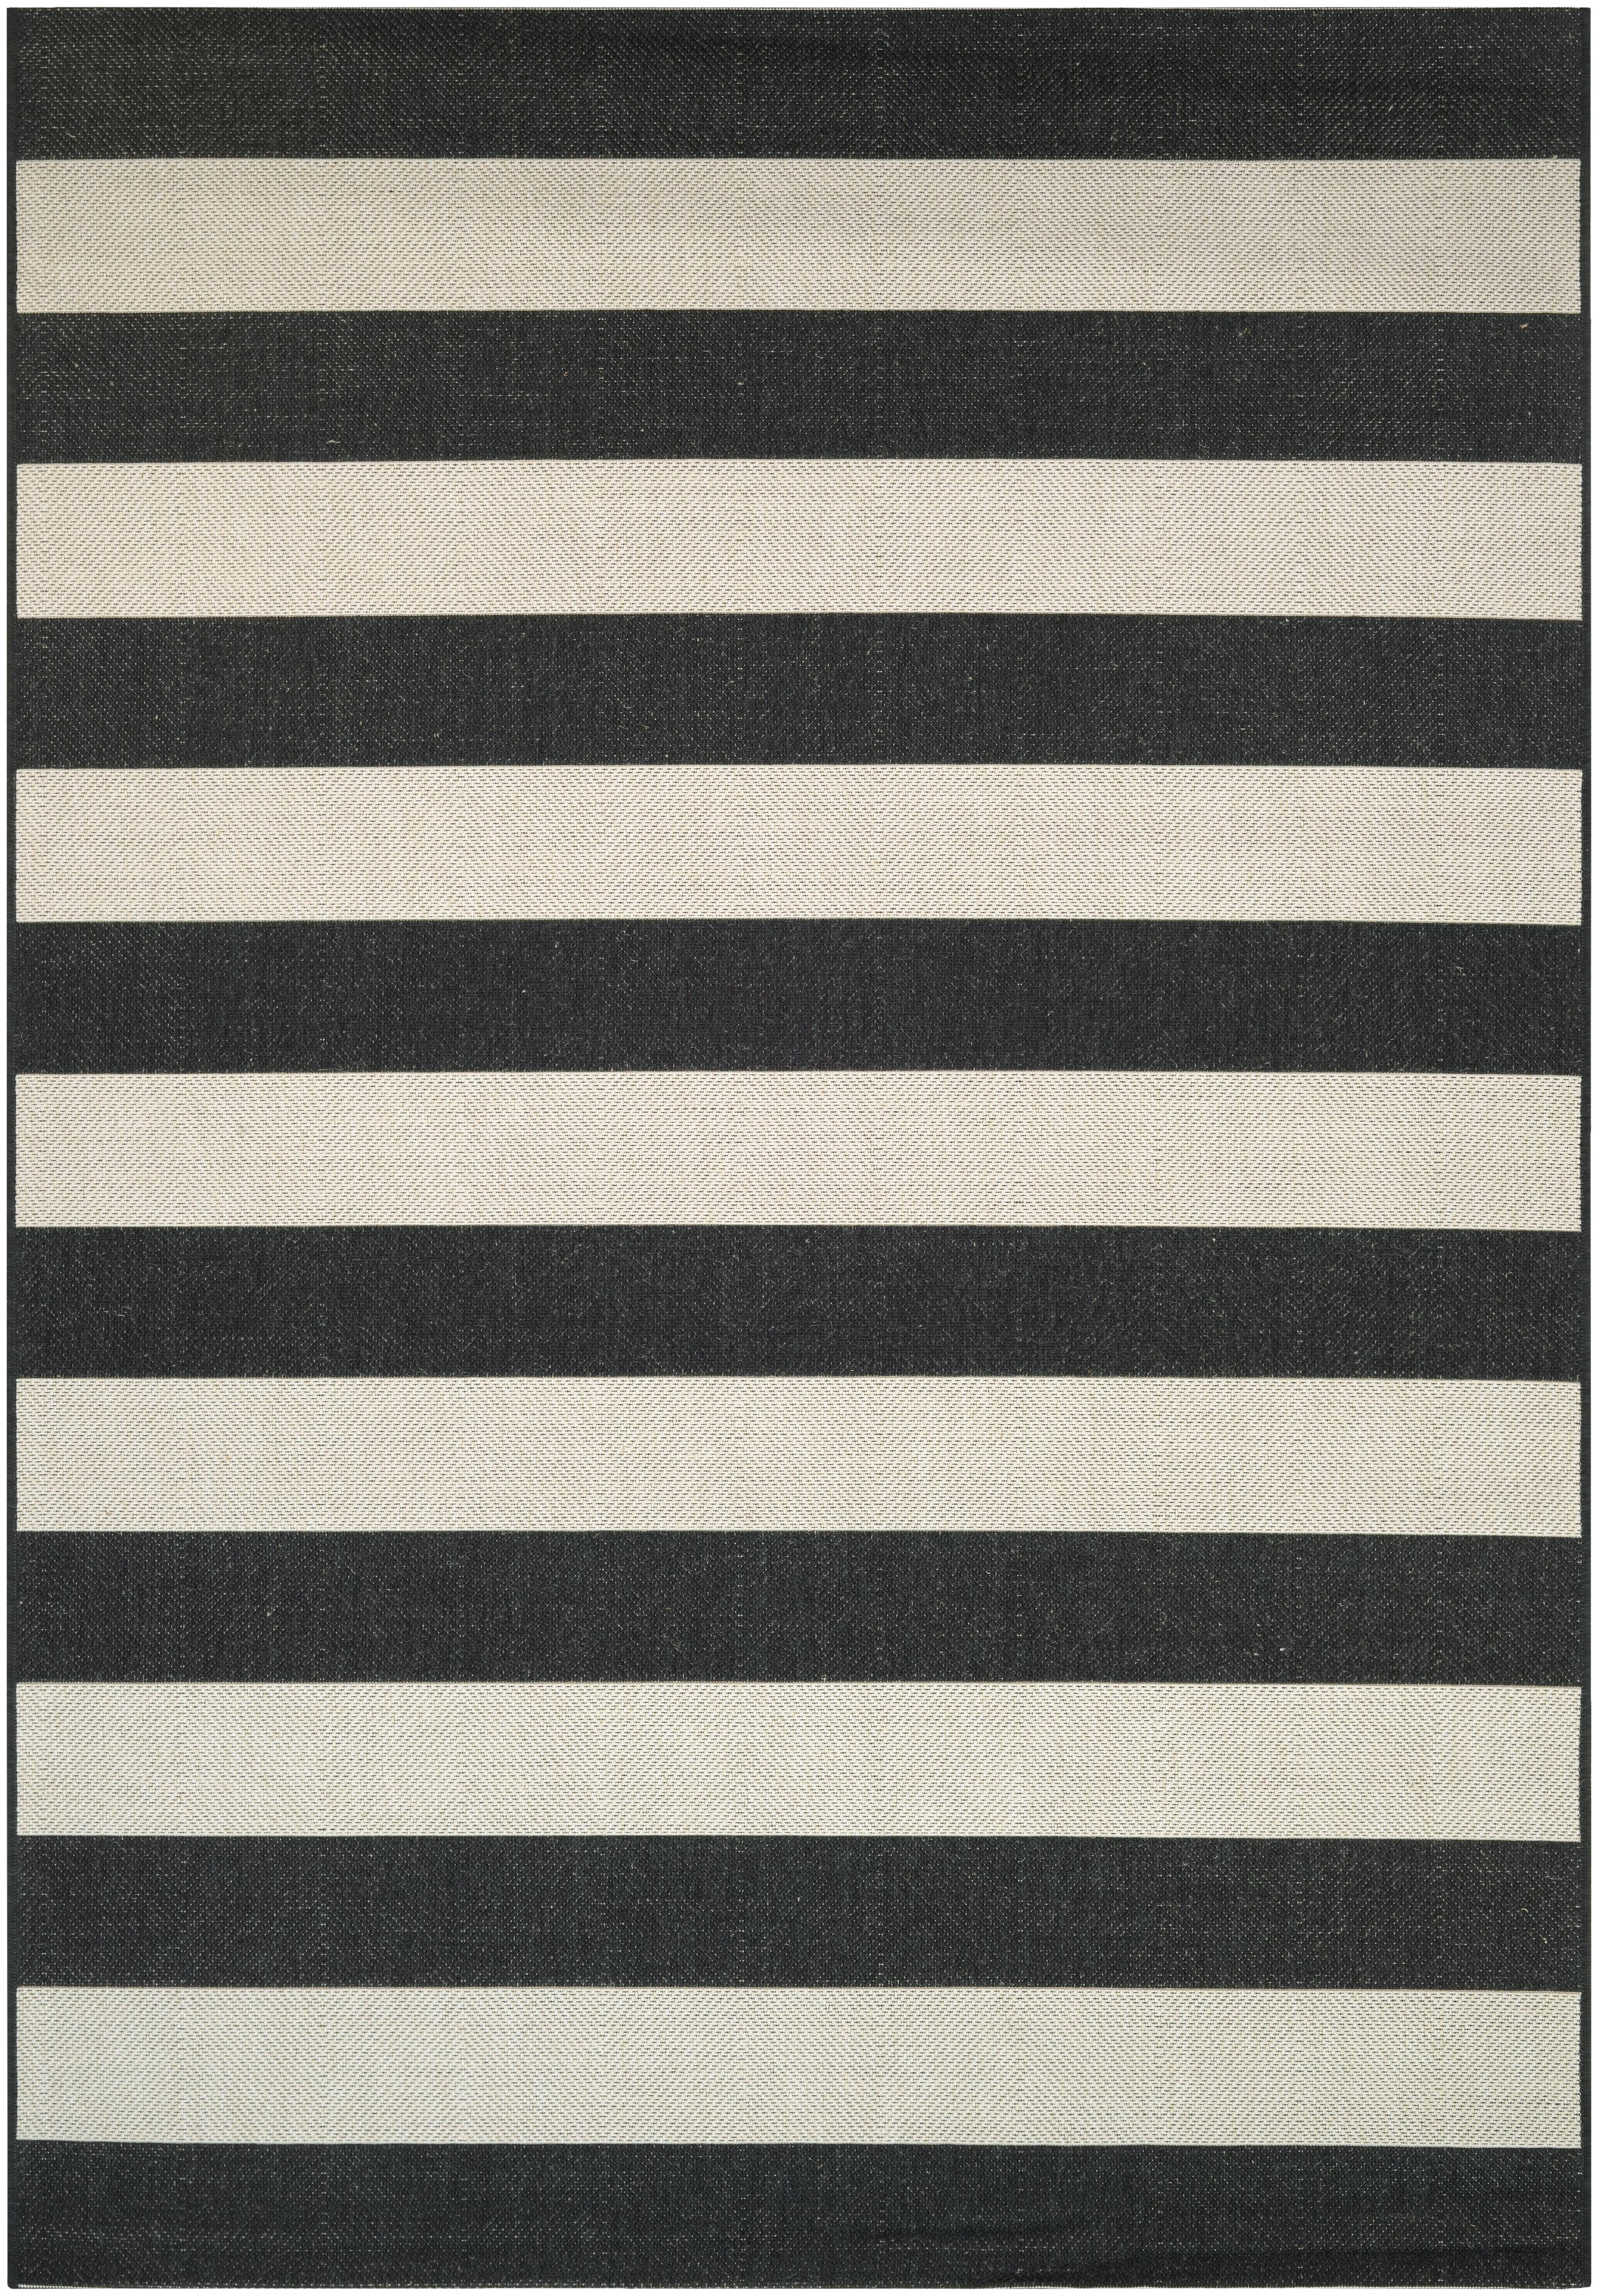 Breezsisan Black and White Striped Outdoor Rug, Cotton, 23x35.5